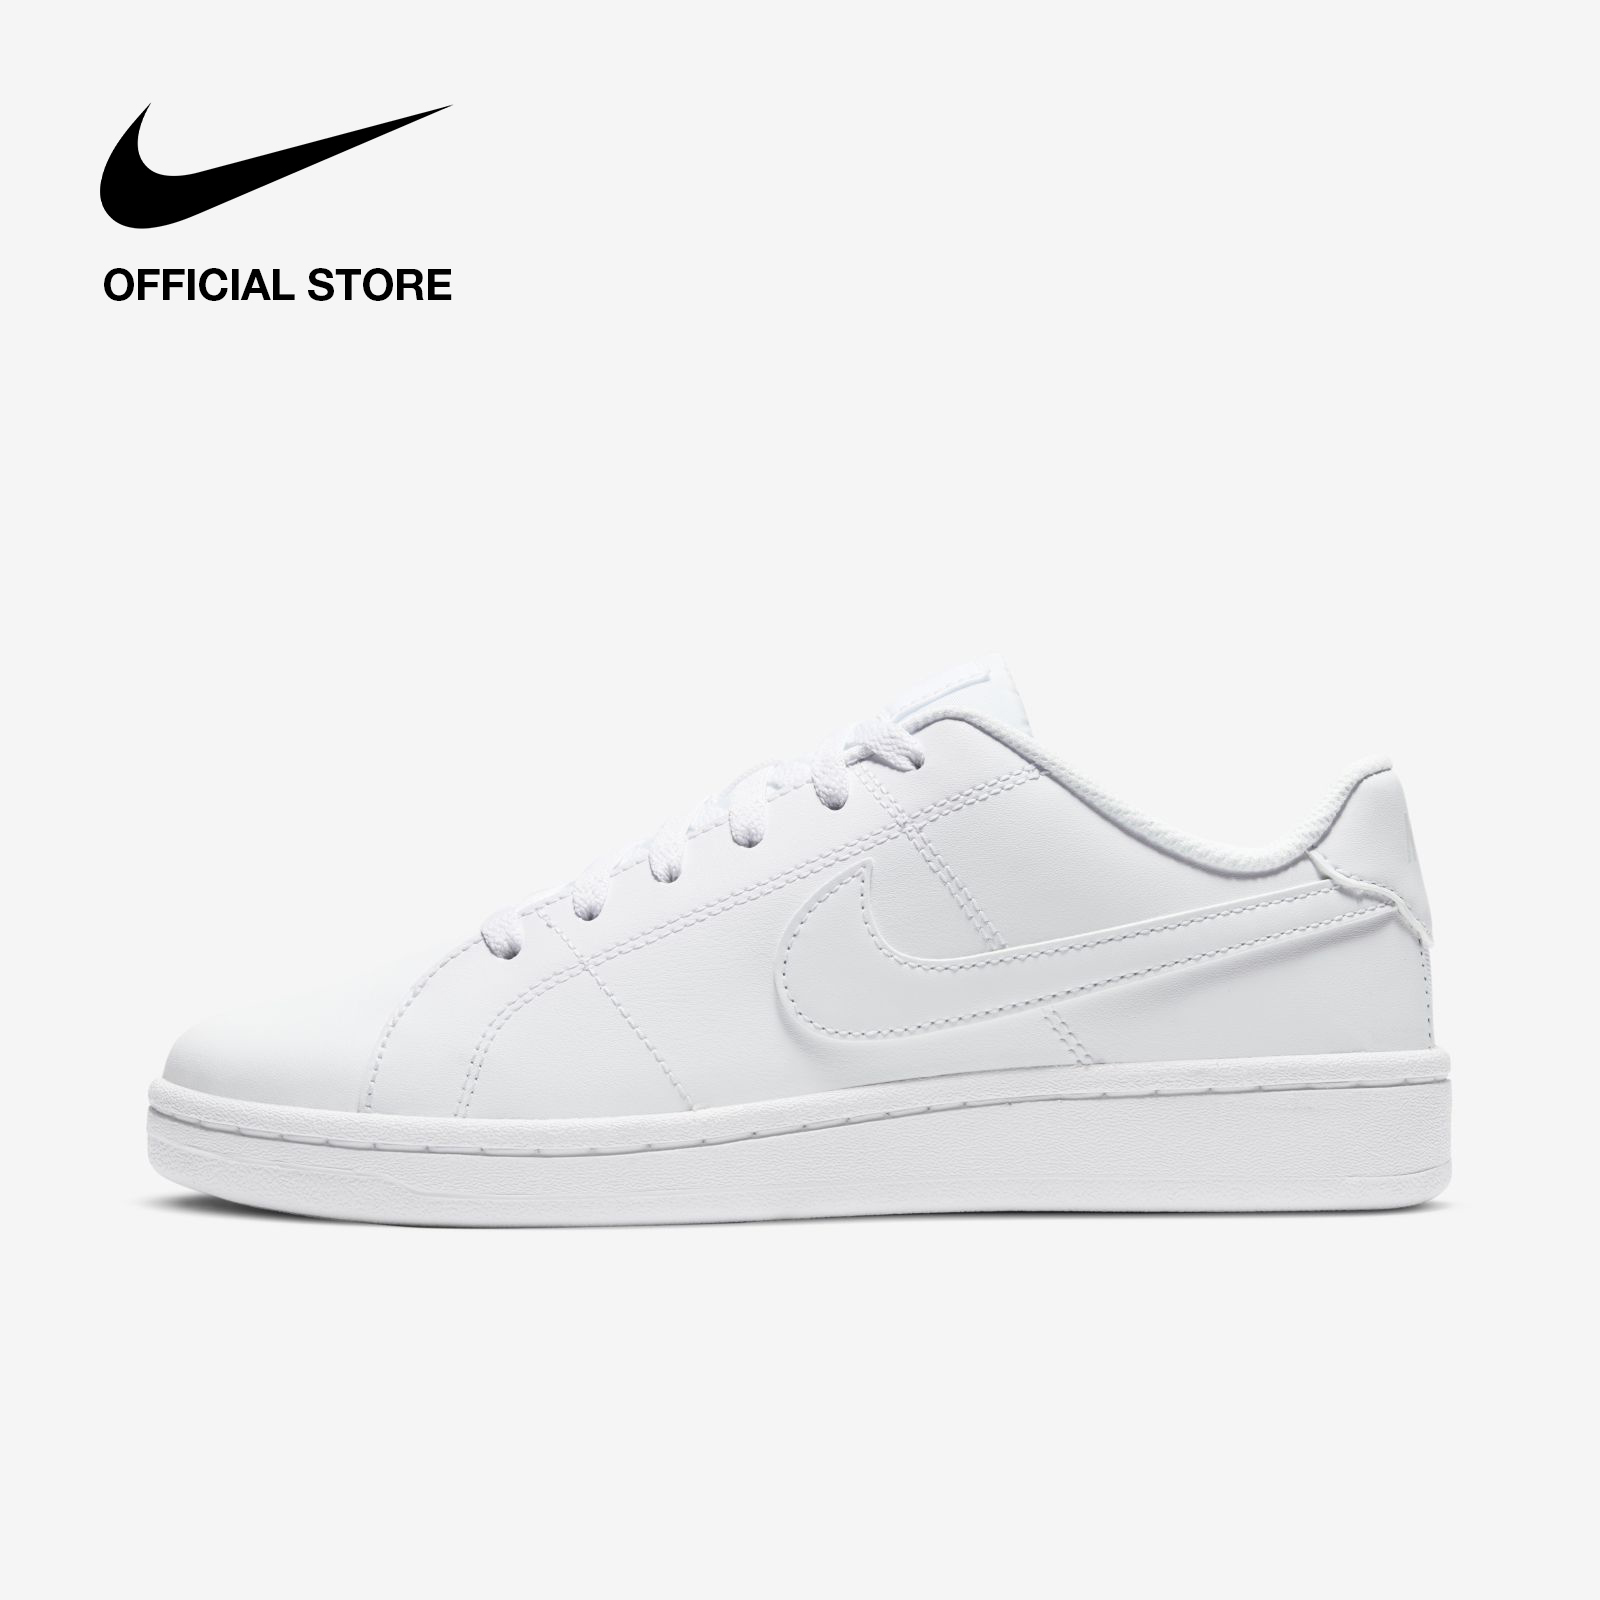 Nike Women's Court Royale 2 Shoes - White ไนกี้ รองเท้าผู้หญิง คอร์ท รอยัล 2 - สีขาว